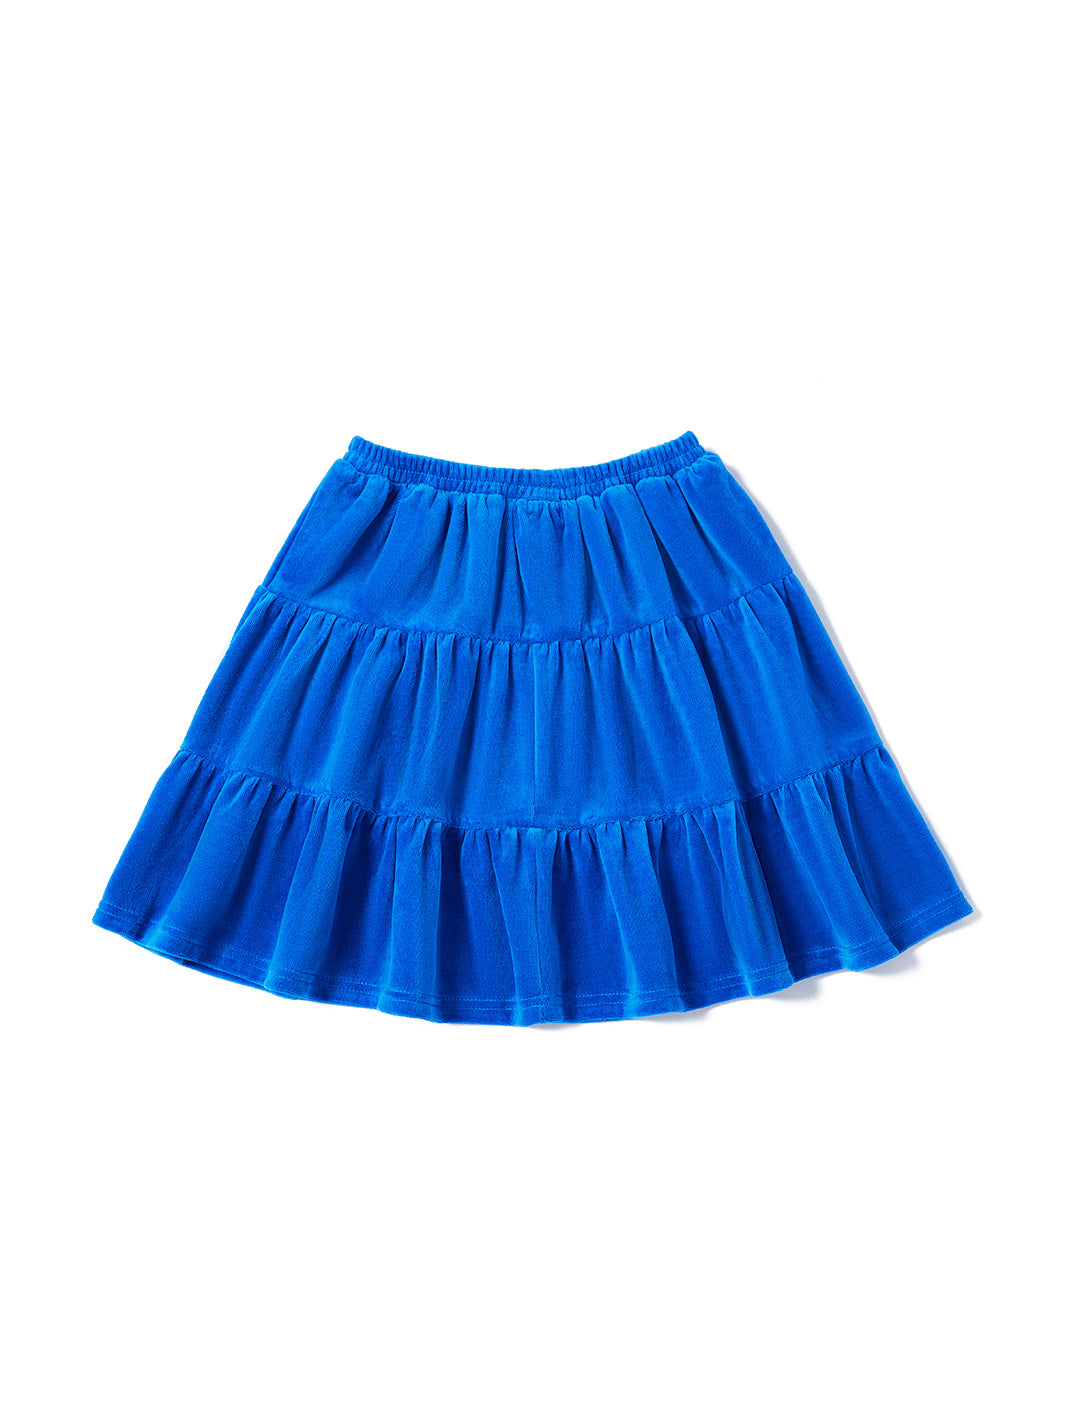 Velour Skirt - Royal Blue